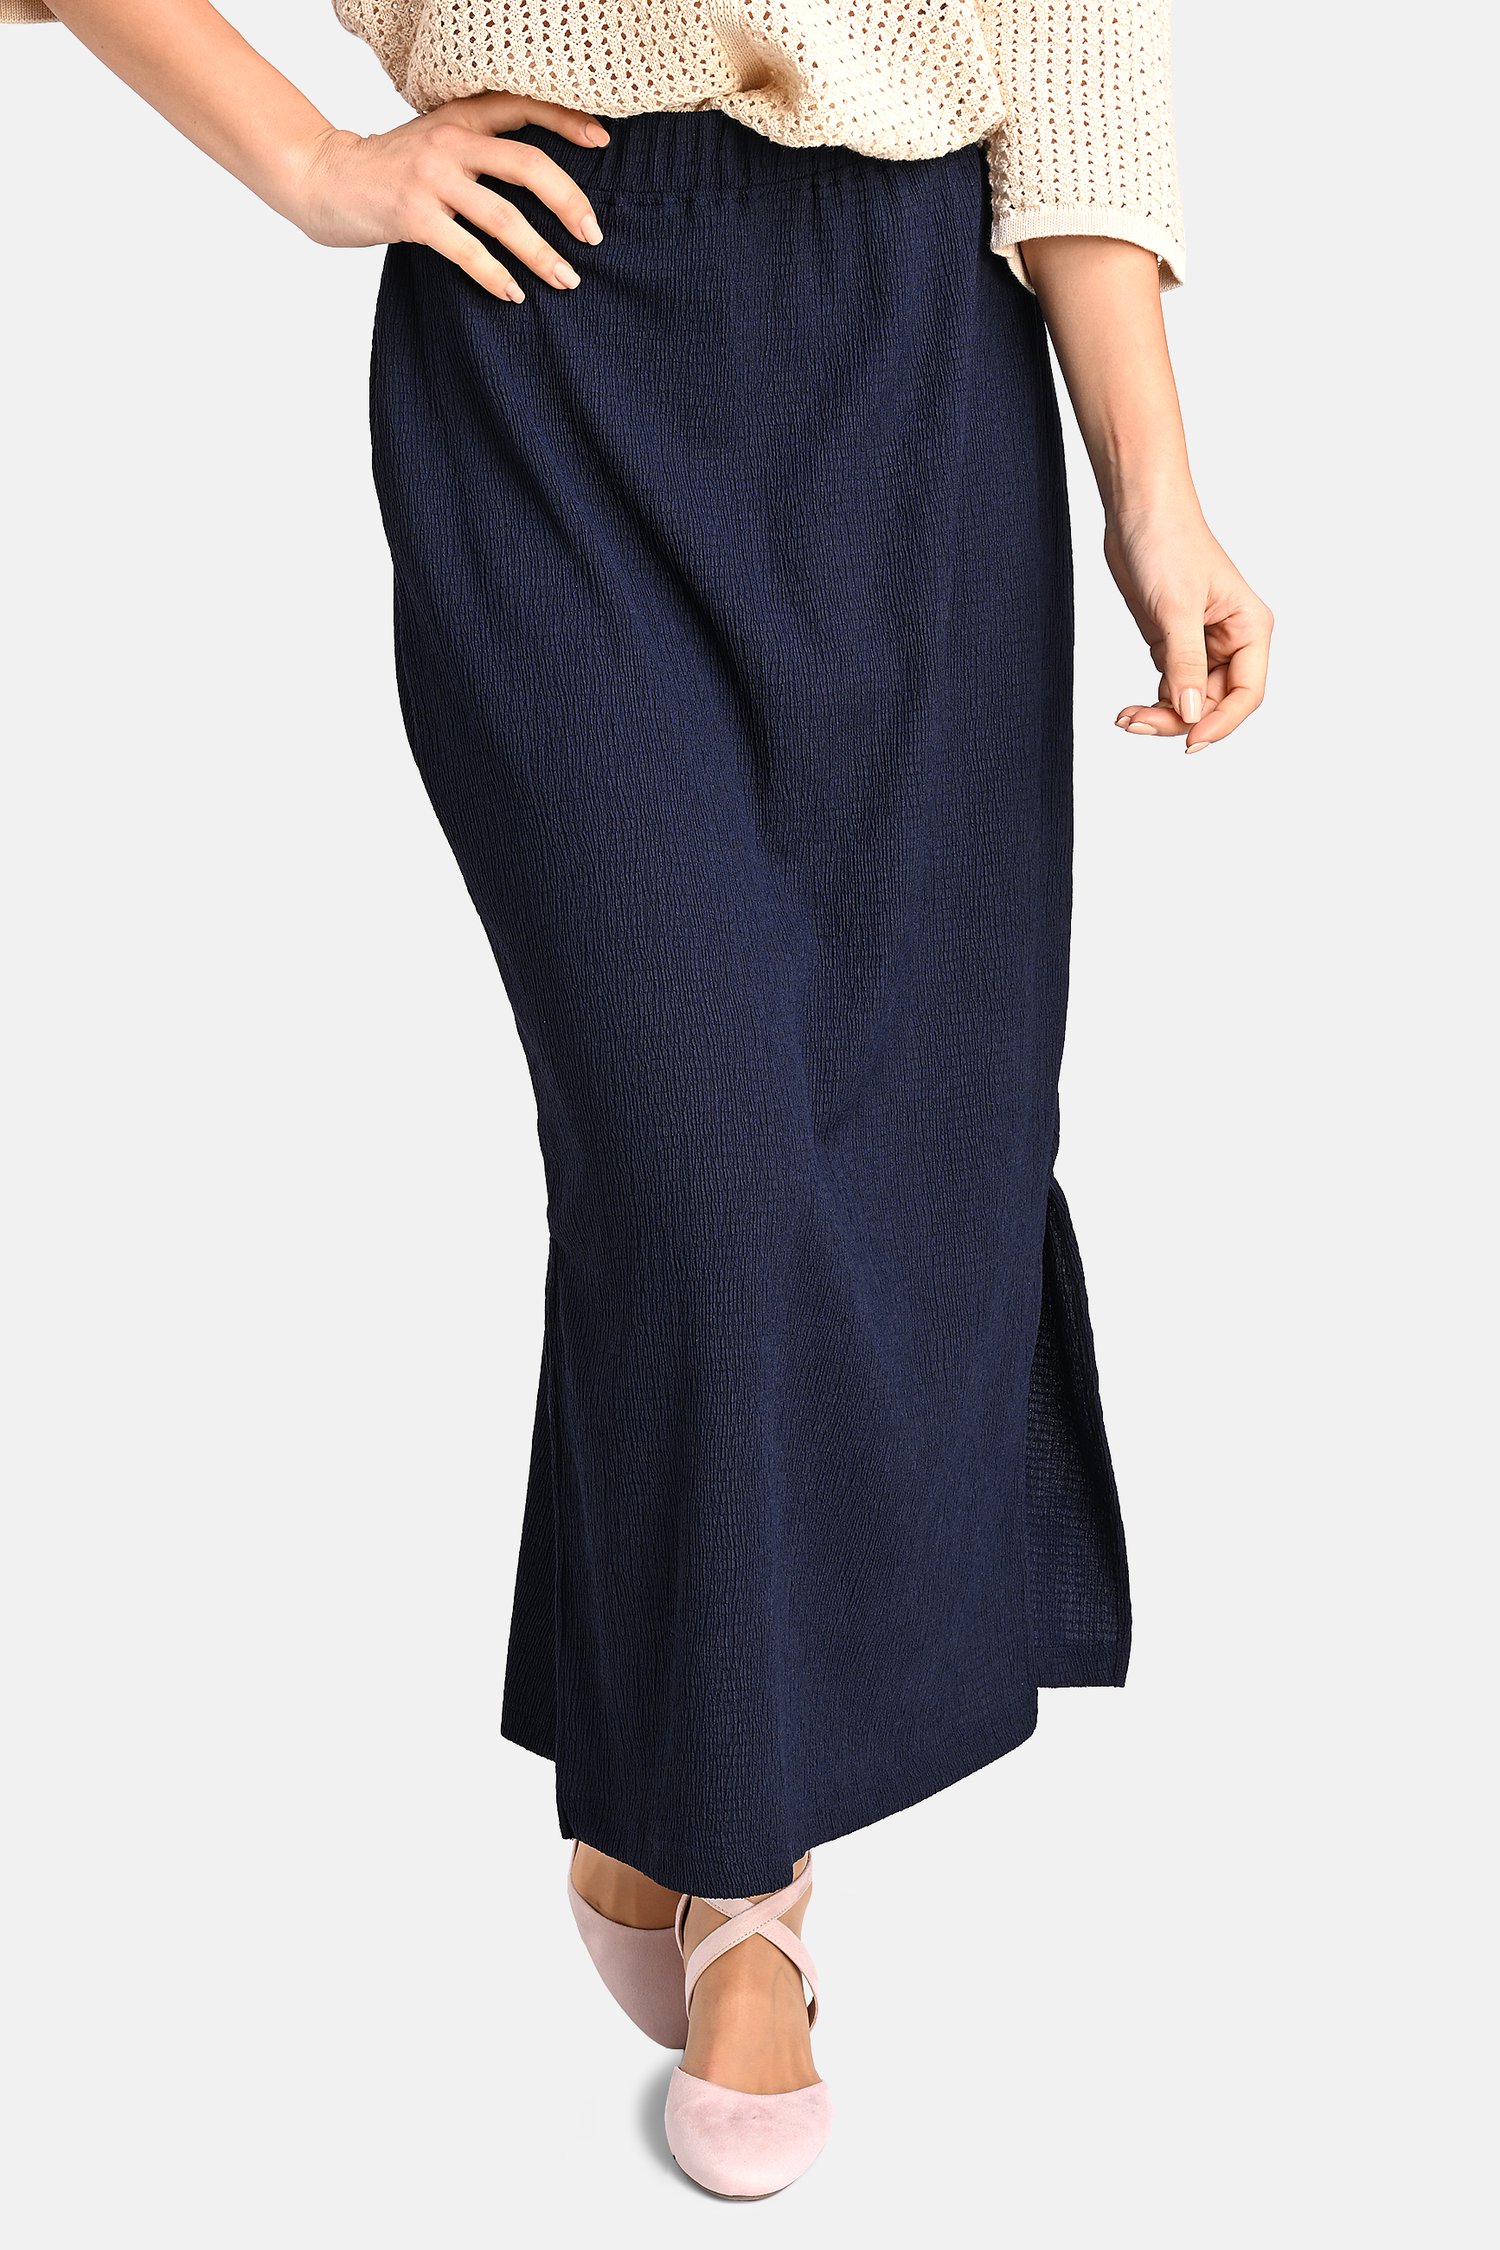 Blauwe rok met elastische taille van Bicalla voor Dames